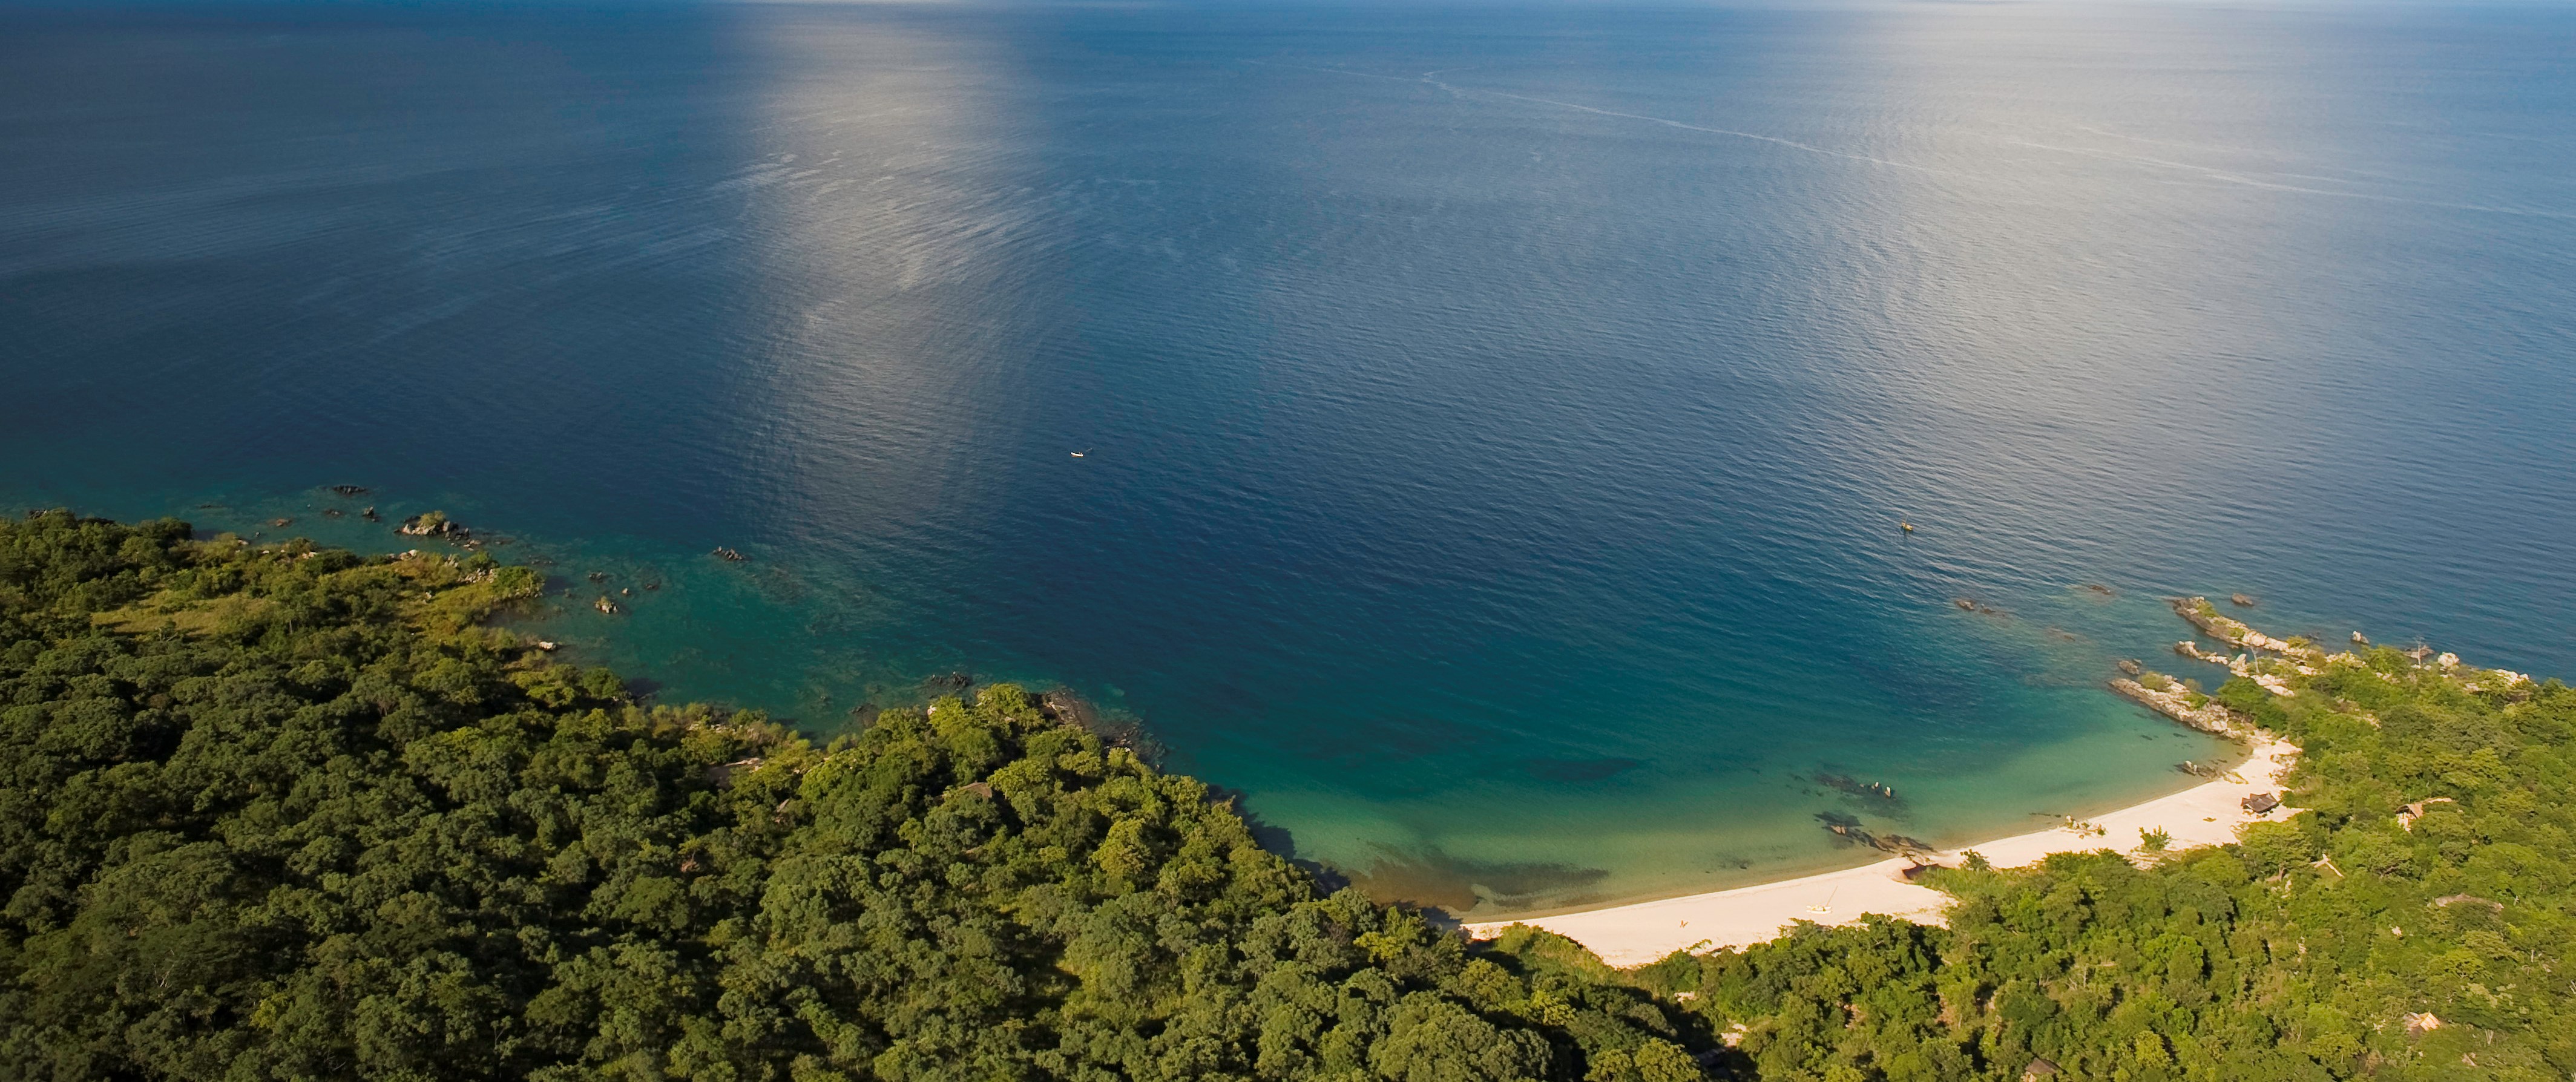 Lake Malawi.jpg